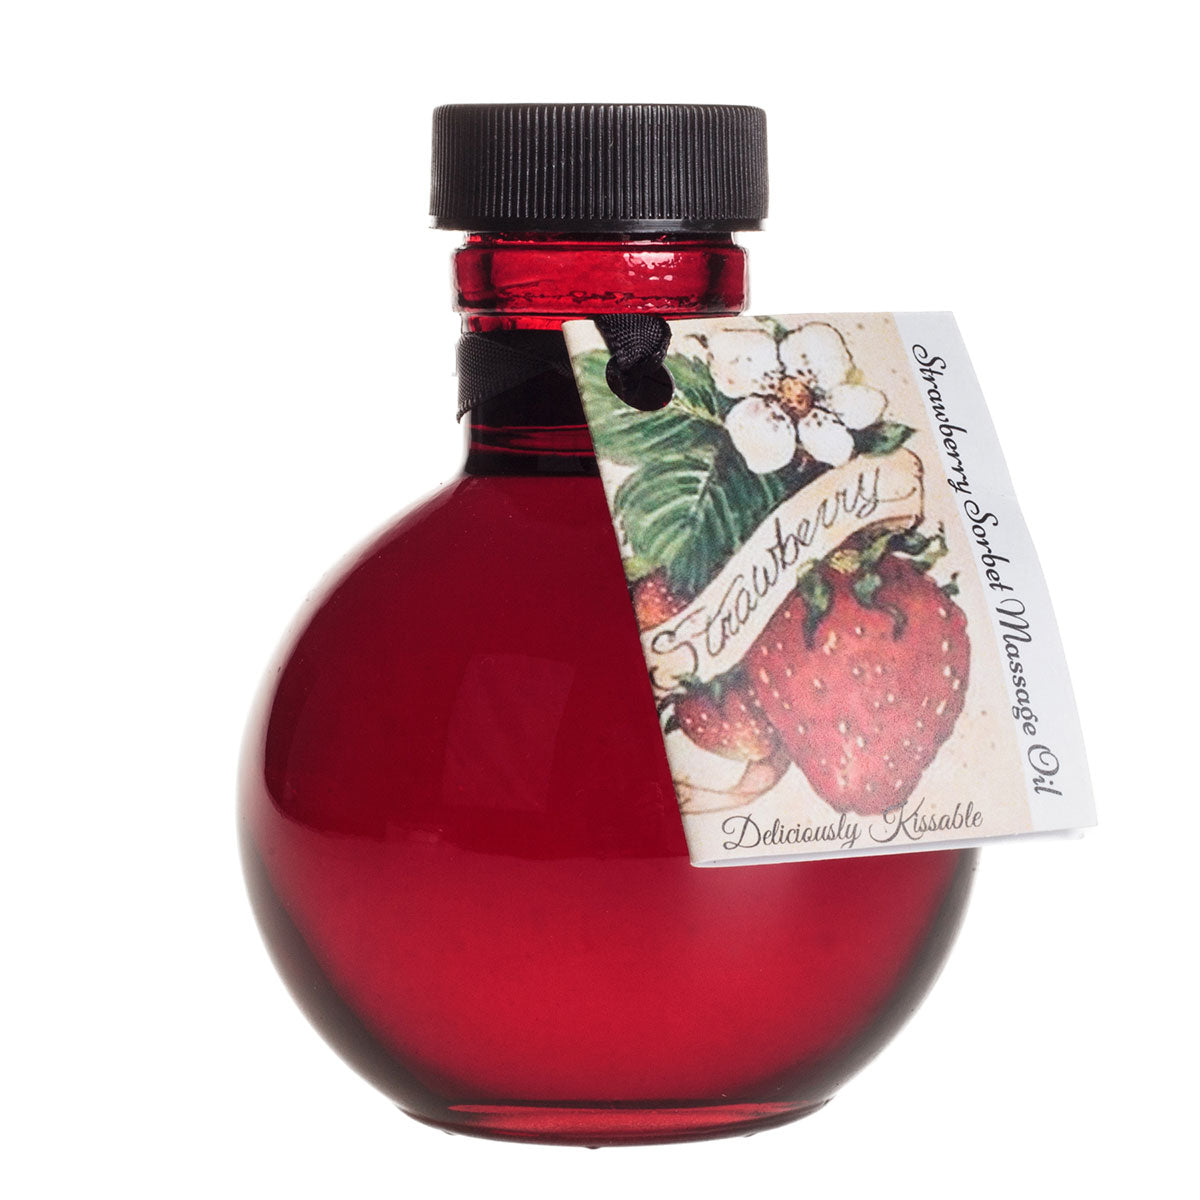 Olivia's Boudoir Kissable Oil - 4oz Strawberry